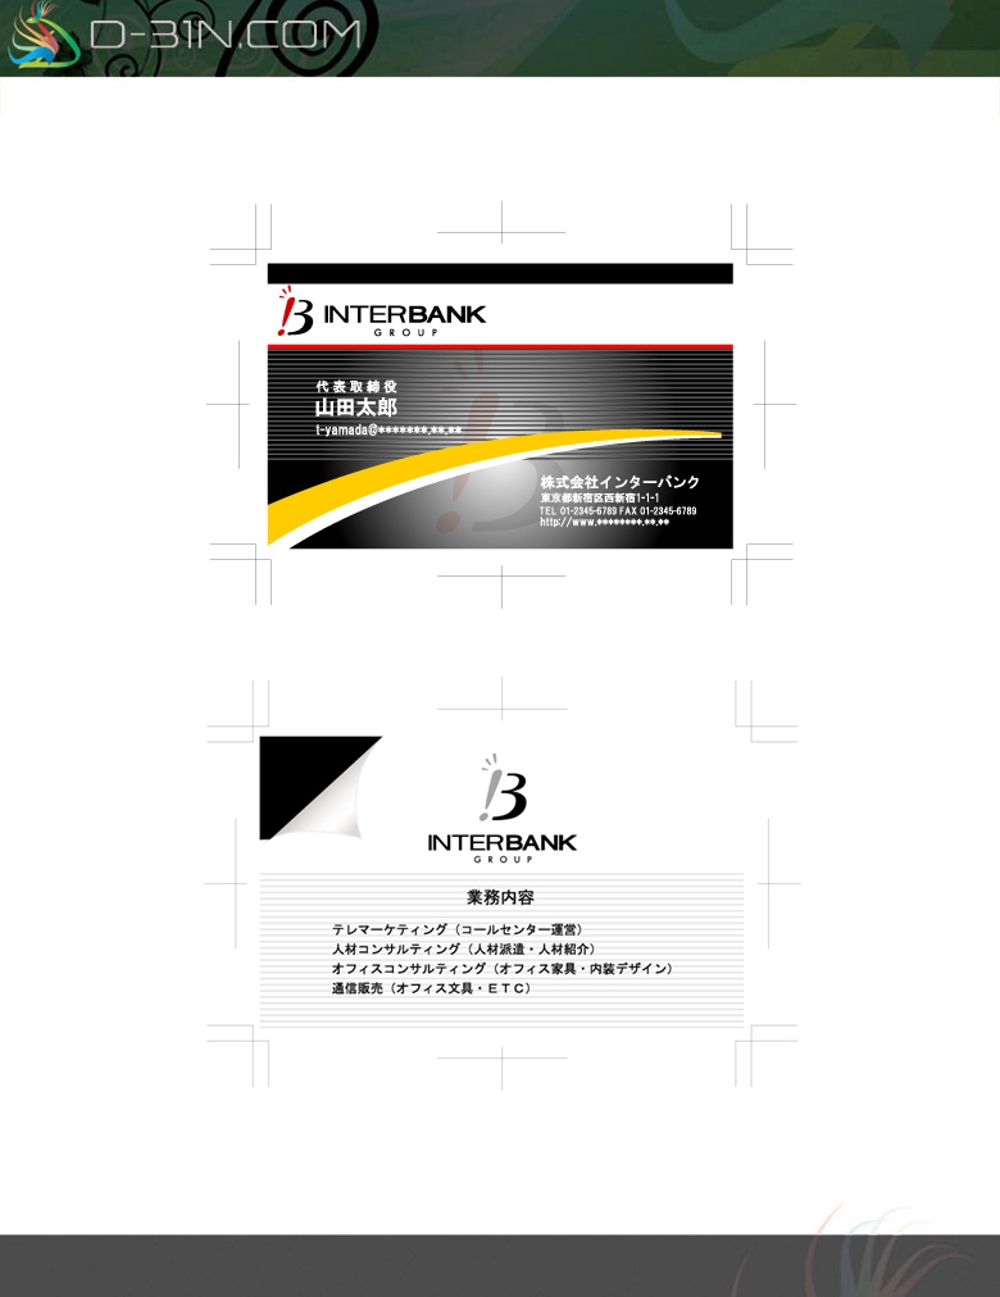 interbank-bcard01.jpg